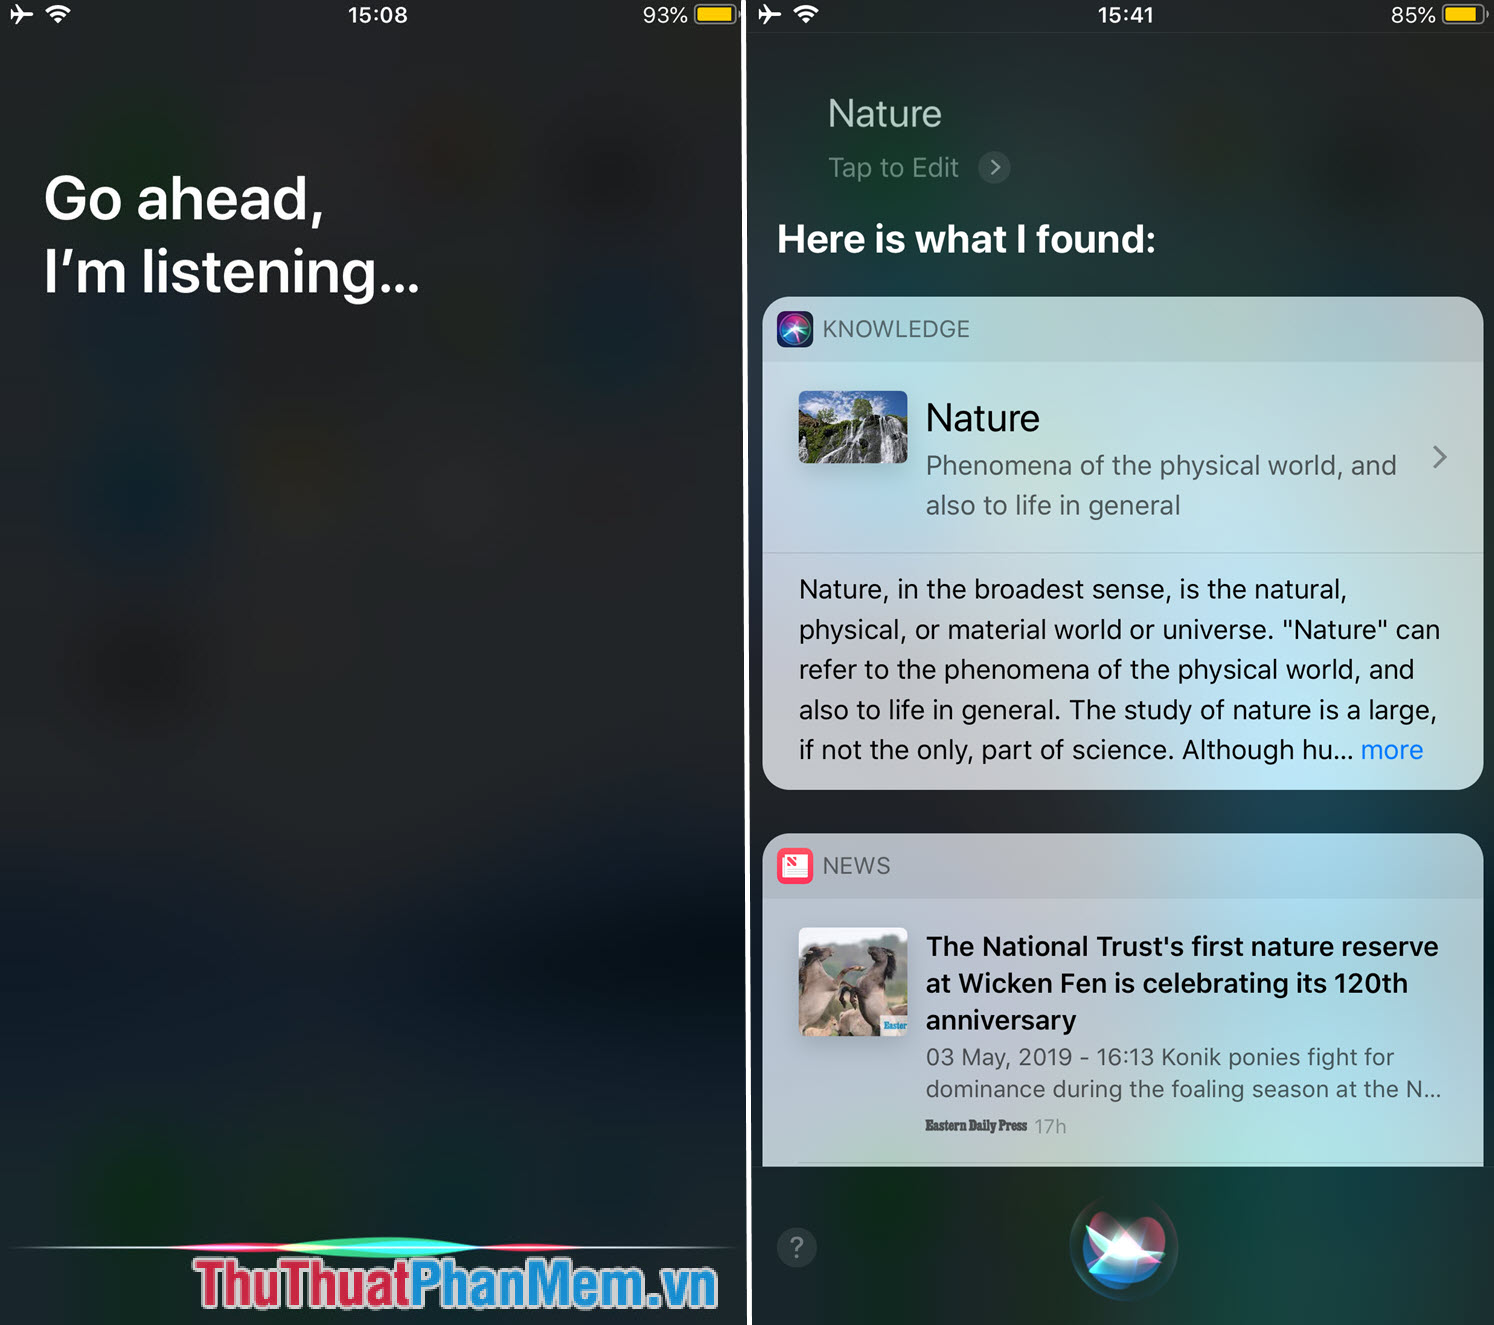 Cách tìm kiếm bằng giọng nói trên điện thoại iPhone, Samsung, Xiaomi